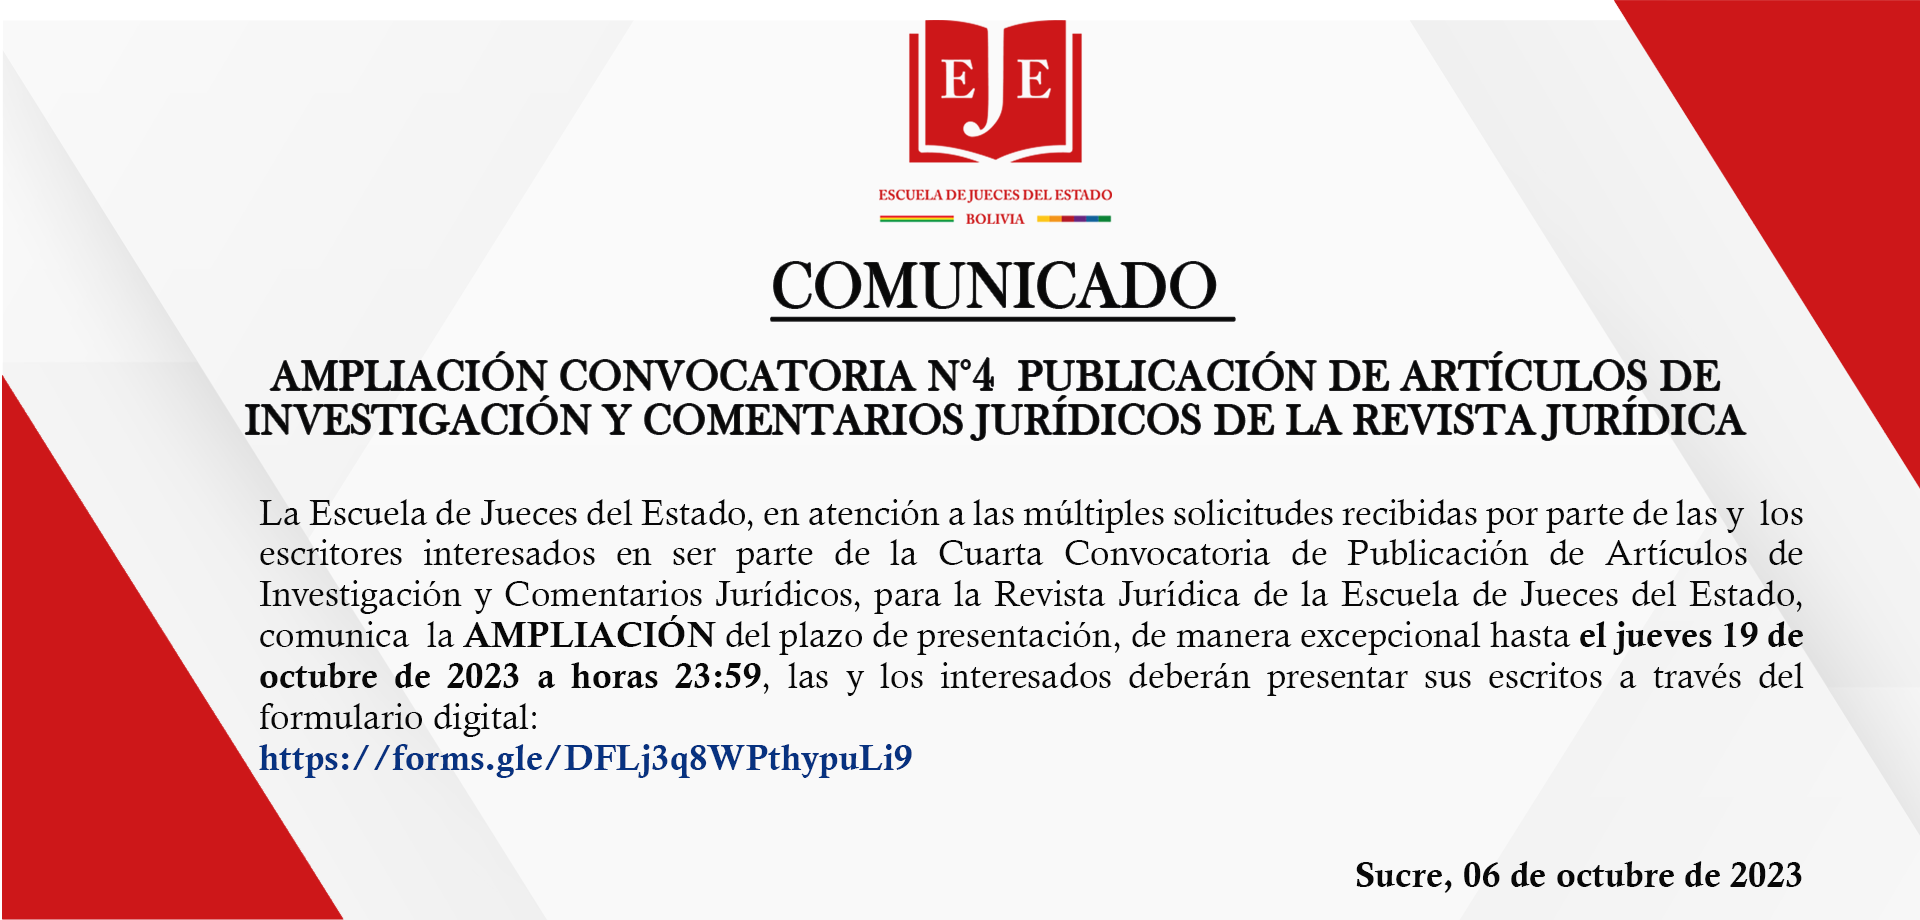 COMUNICADO  AMPLIACIÓN CONVOCATORIA N°4 PUBLICACIÓN DE ARTÍCULOS DE INVESTIGACIÓN Y COMENTARIOS JURÍDICOS DE LA REVISTA JURÍDICA